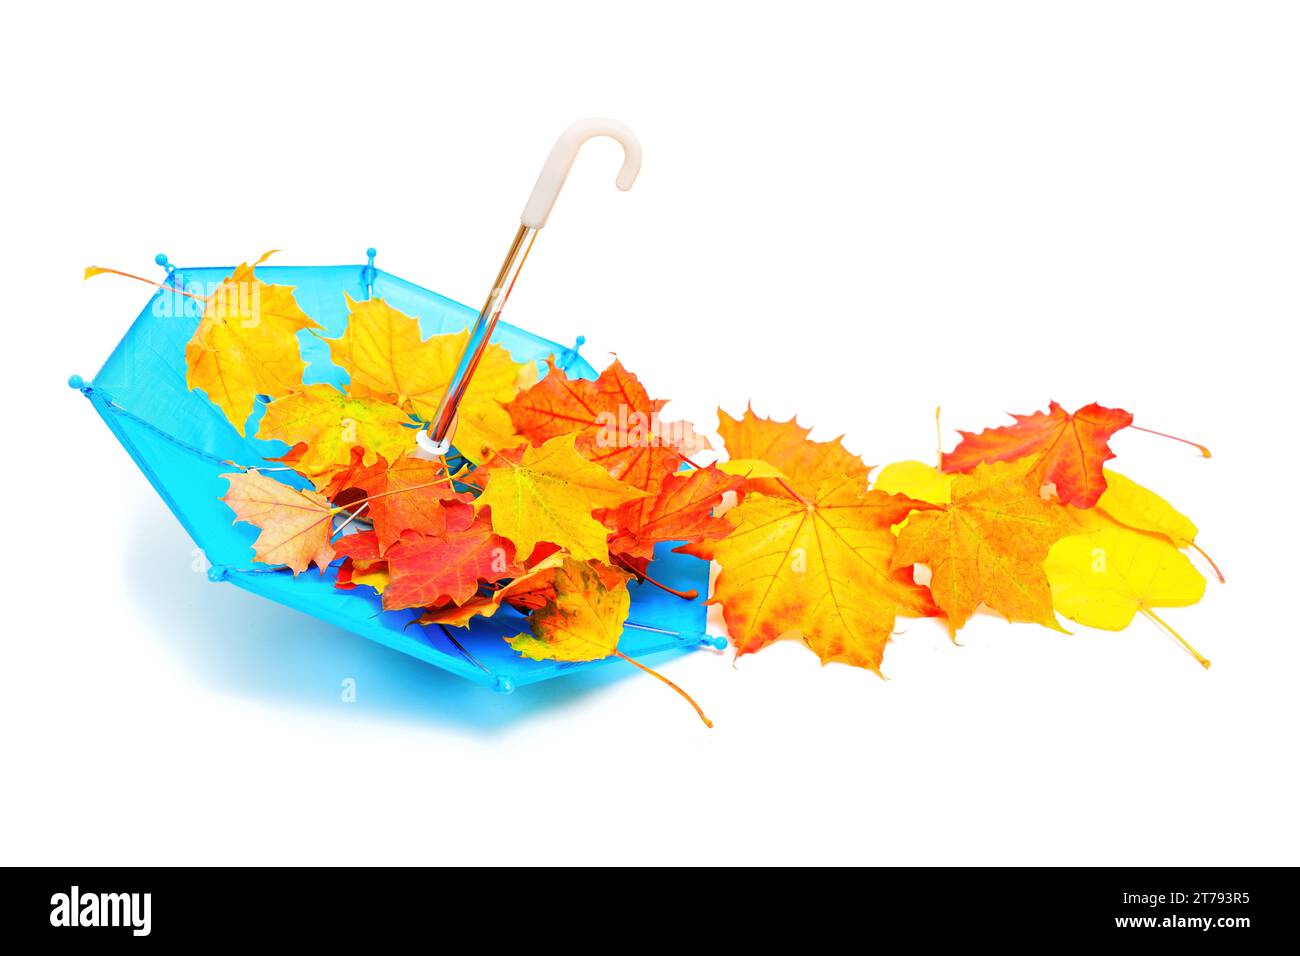 Winziger blauer Spielzeugschirm und ein Haufen leuchtender Ahornblätter vor einem sauberen weißen Hintergrund. Die Farben und das charmante Konzept der Herbstsaison. Stockfoto